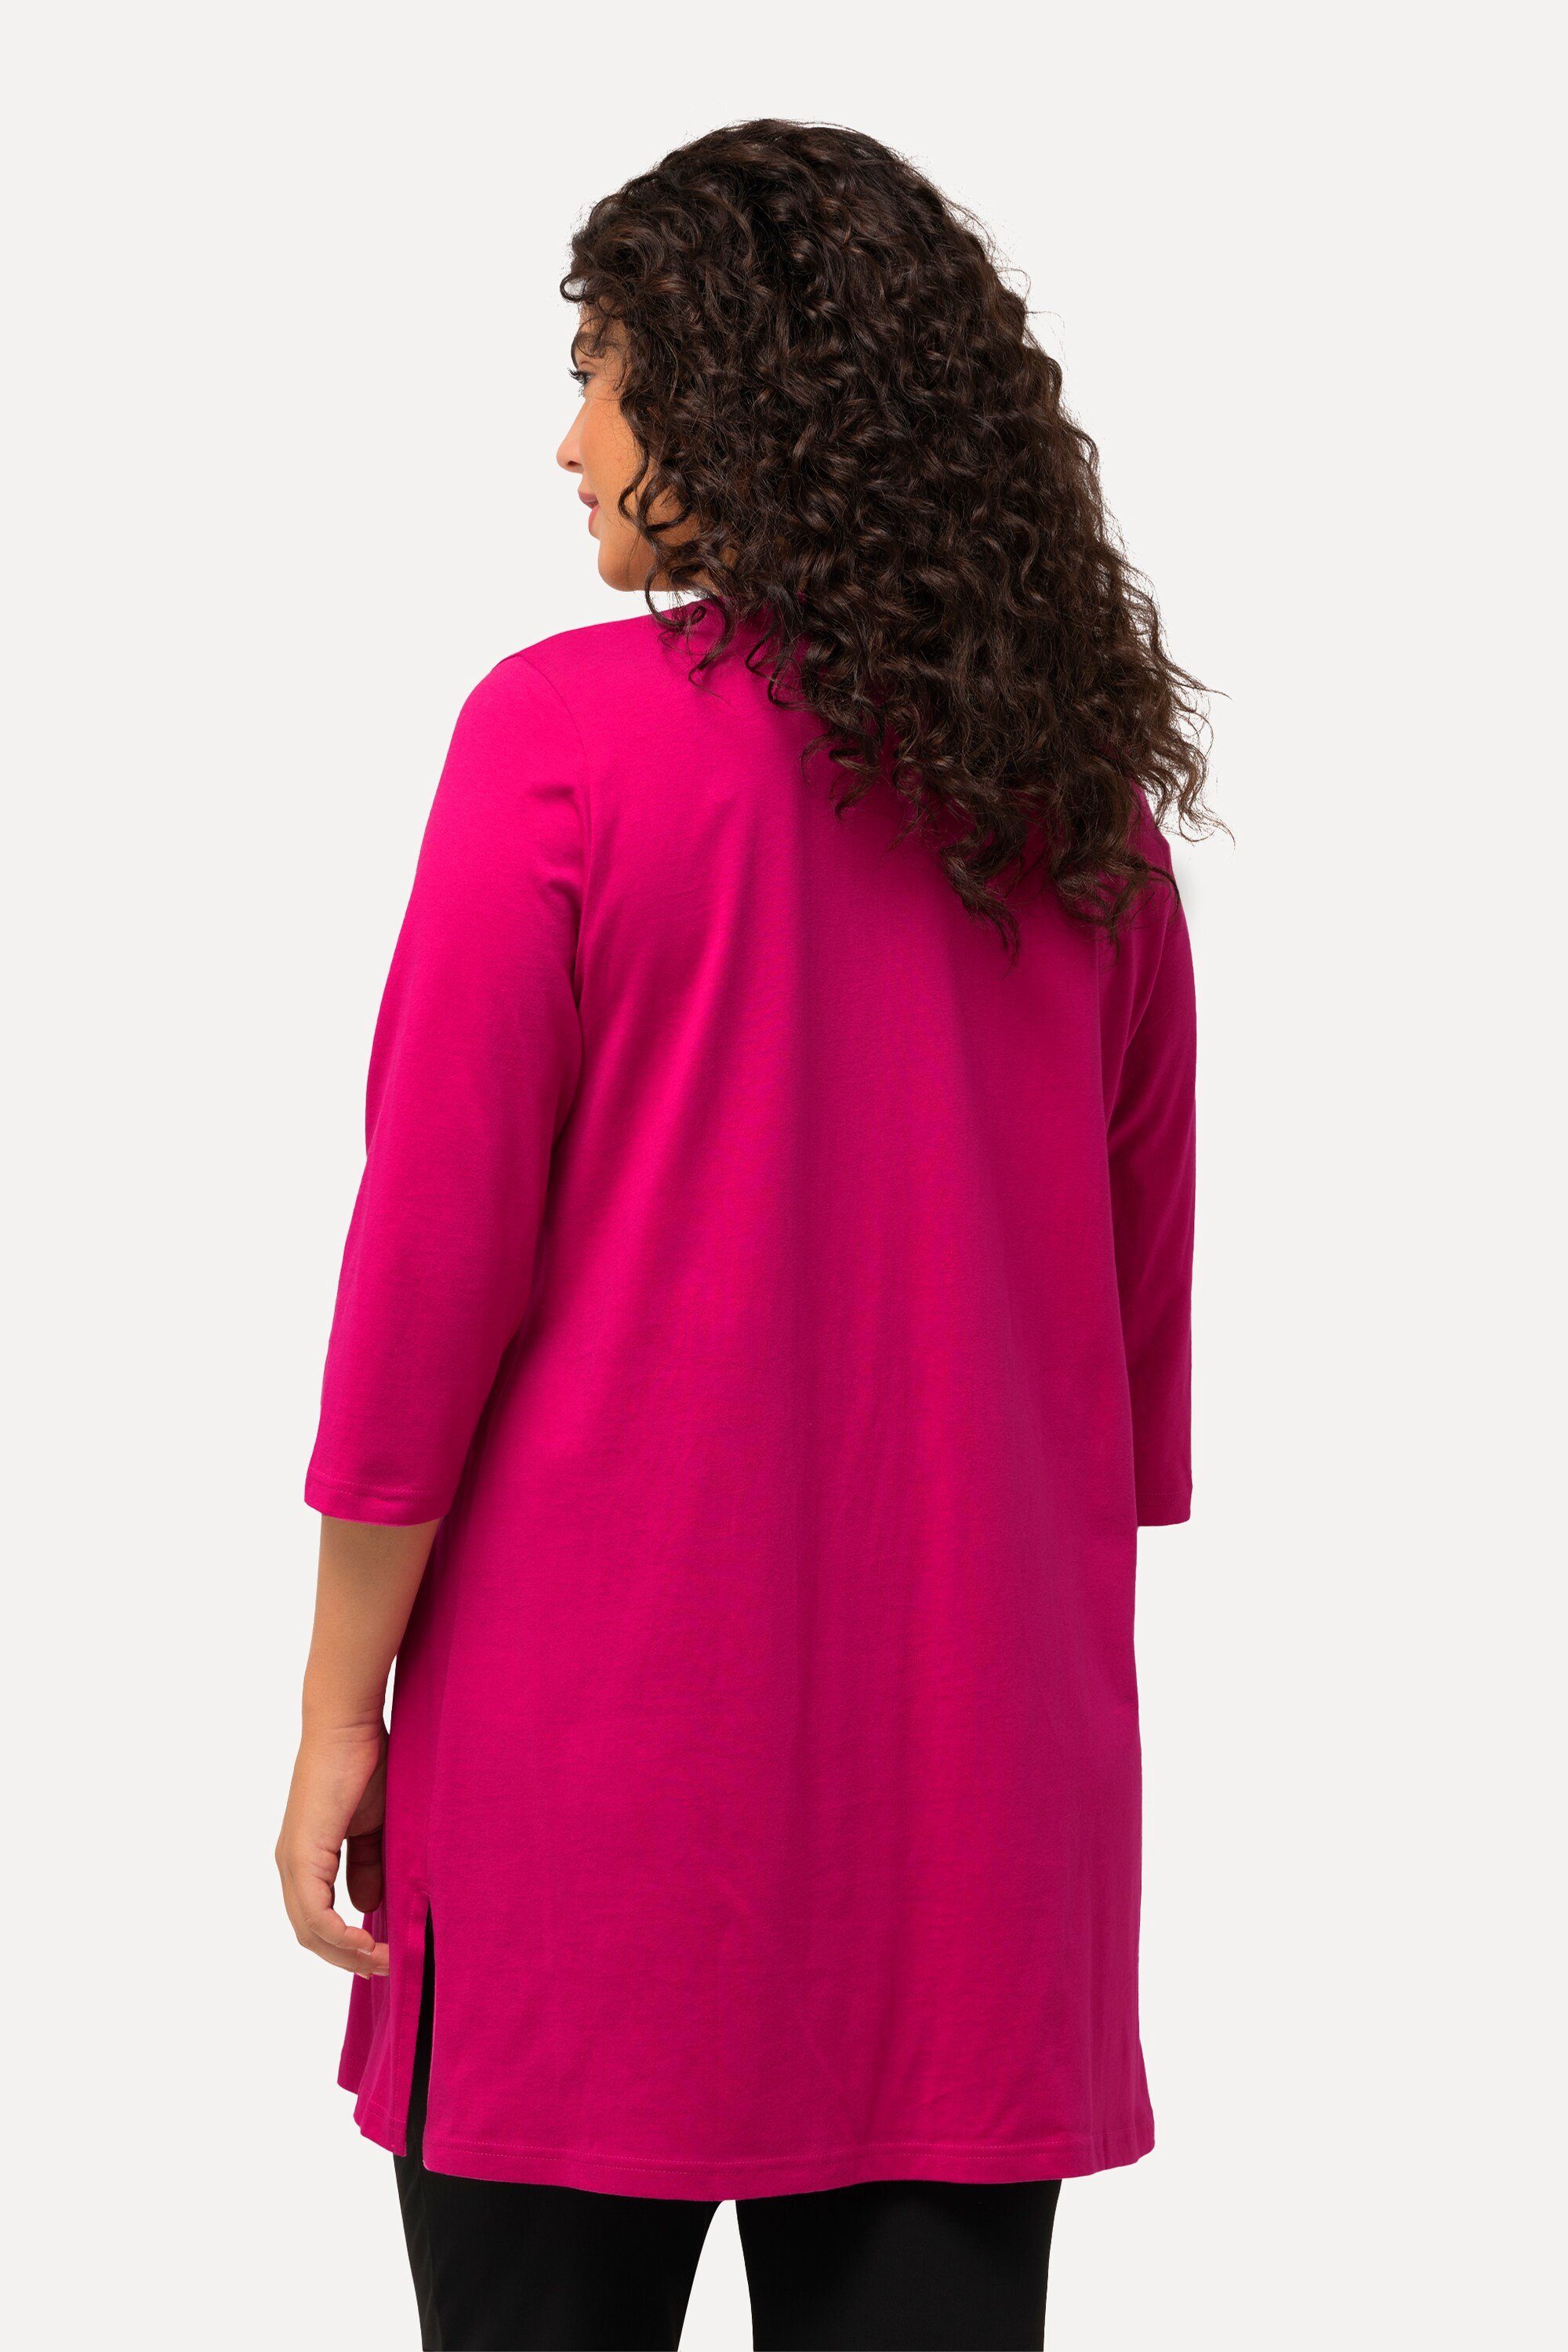 Ulla Popken Longshirt fuchsia 3/4-Arm pink V-Ausschnitt A-Linie Longshirt